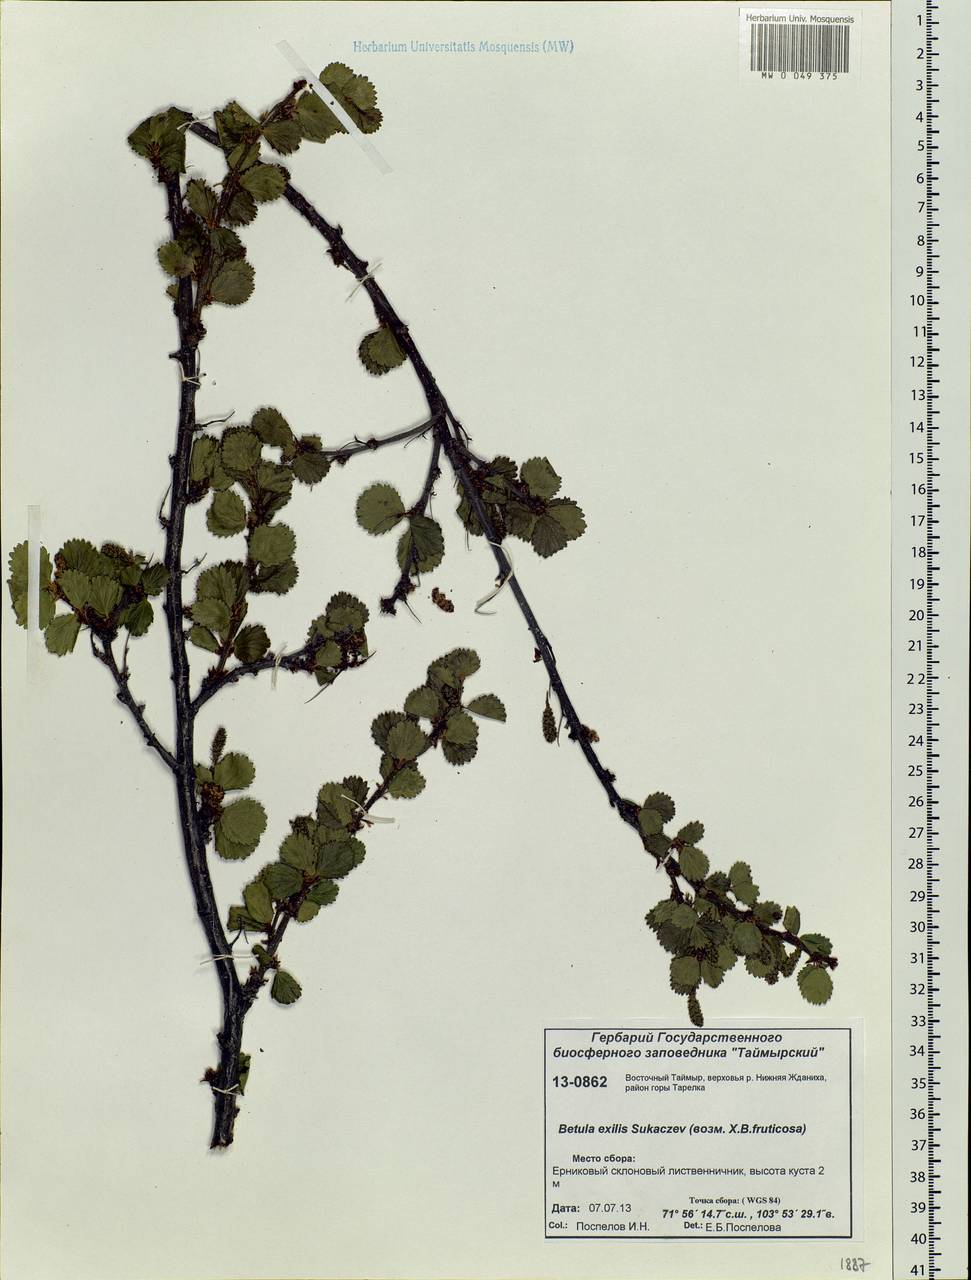 Betula glandulosa Michx., Siberia, Central Siberia (S3) (Russia)